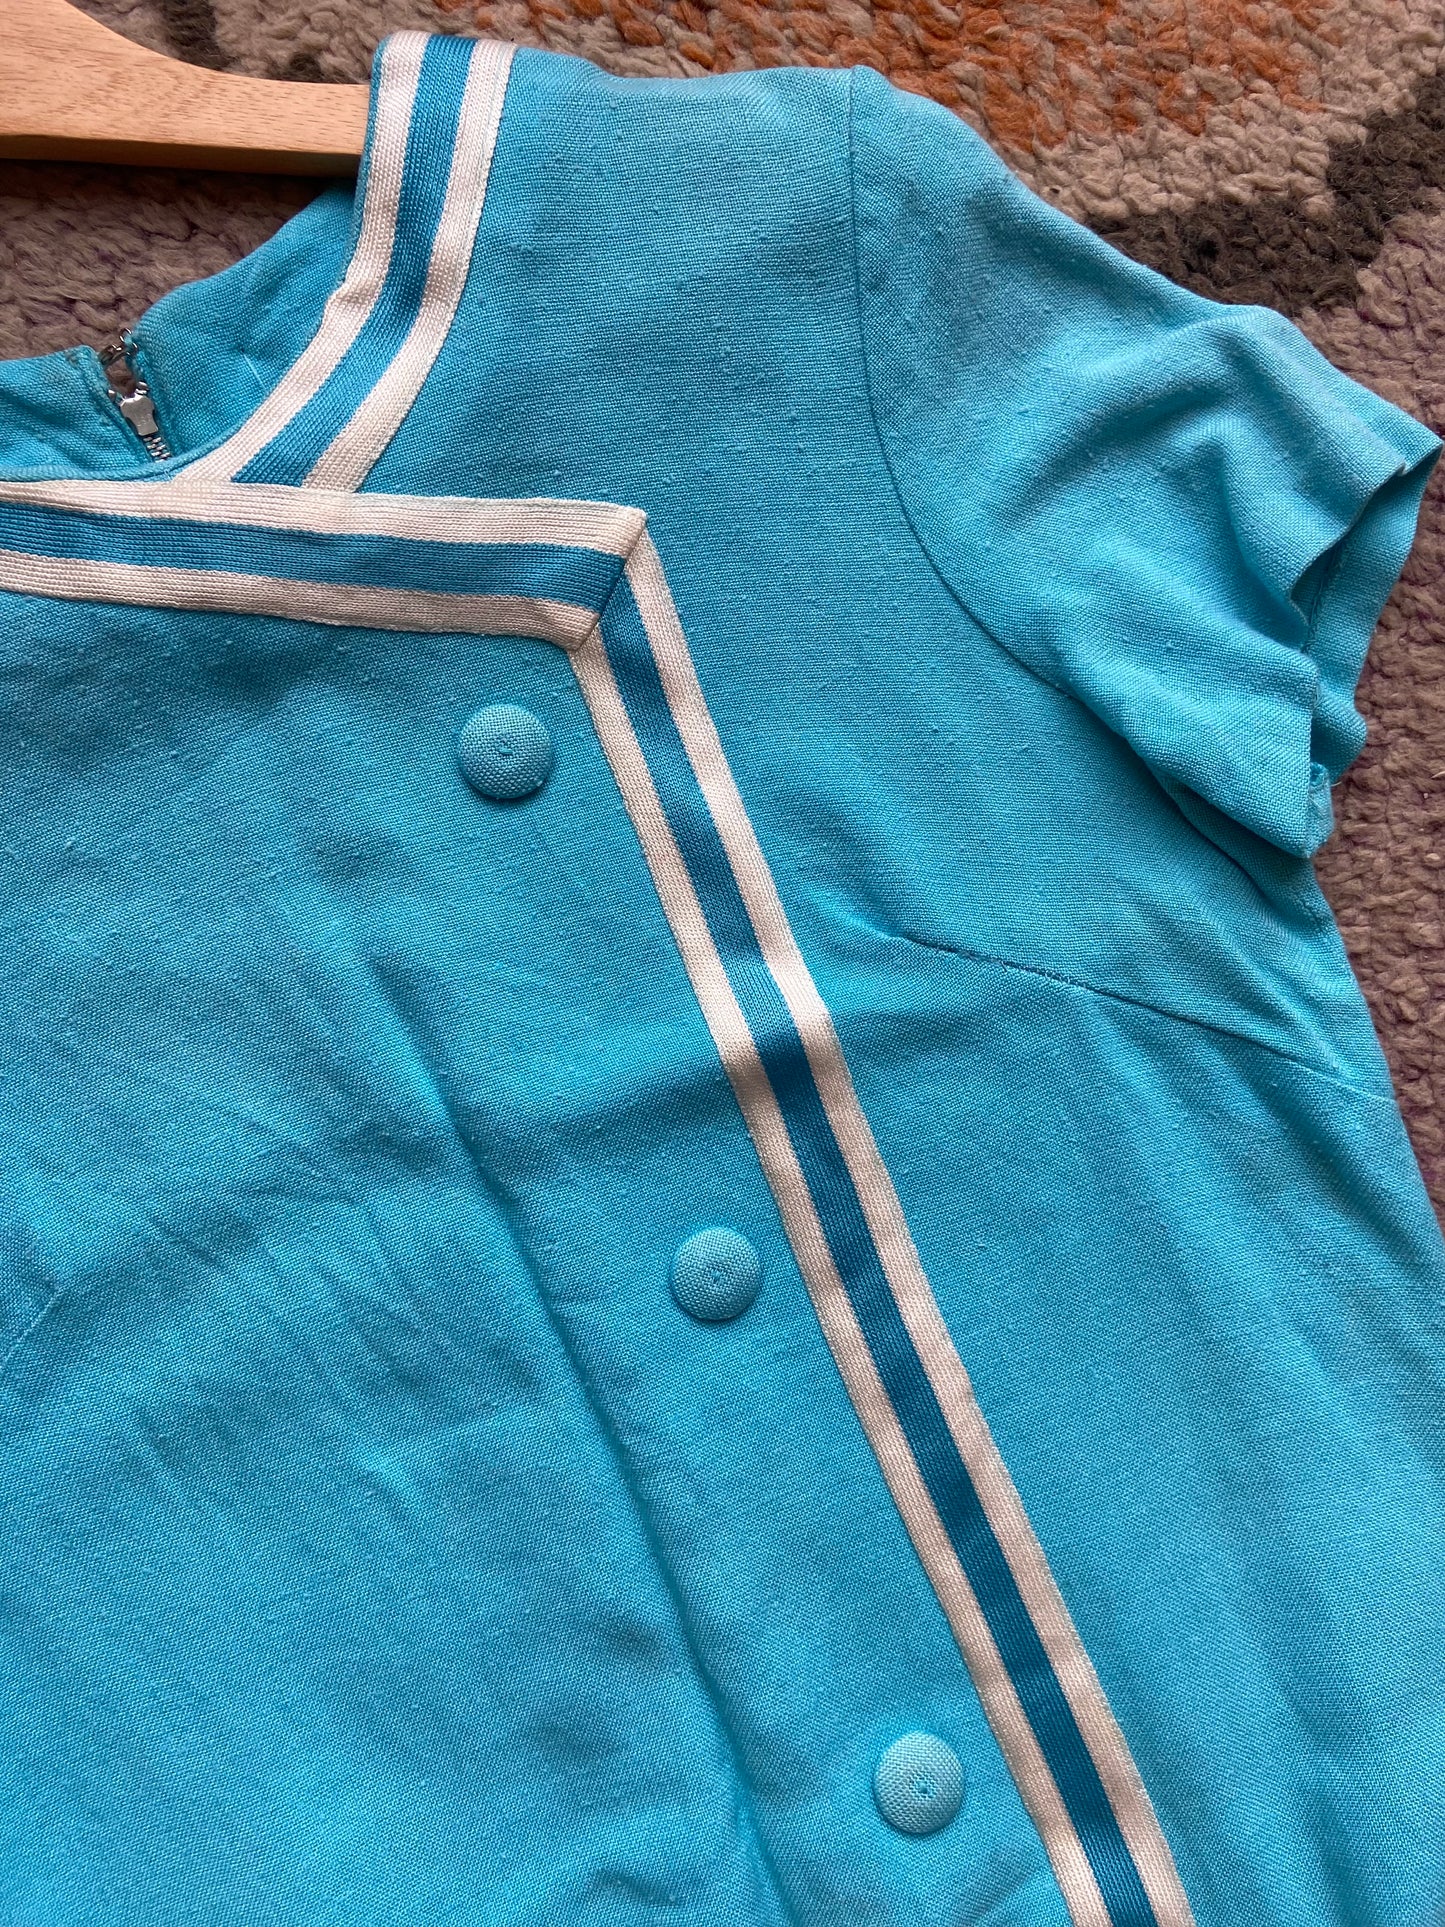 1950s Baby Blue Linen Shift Dress